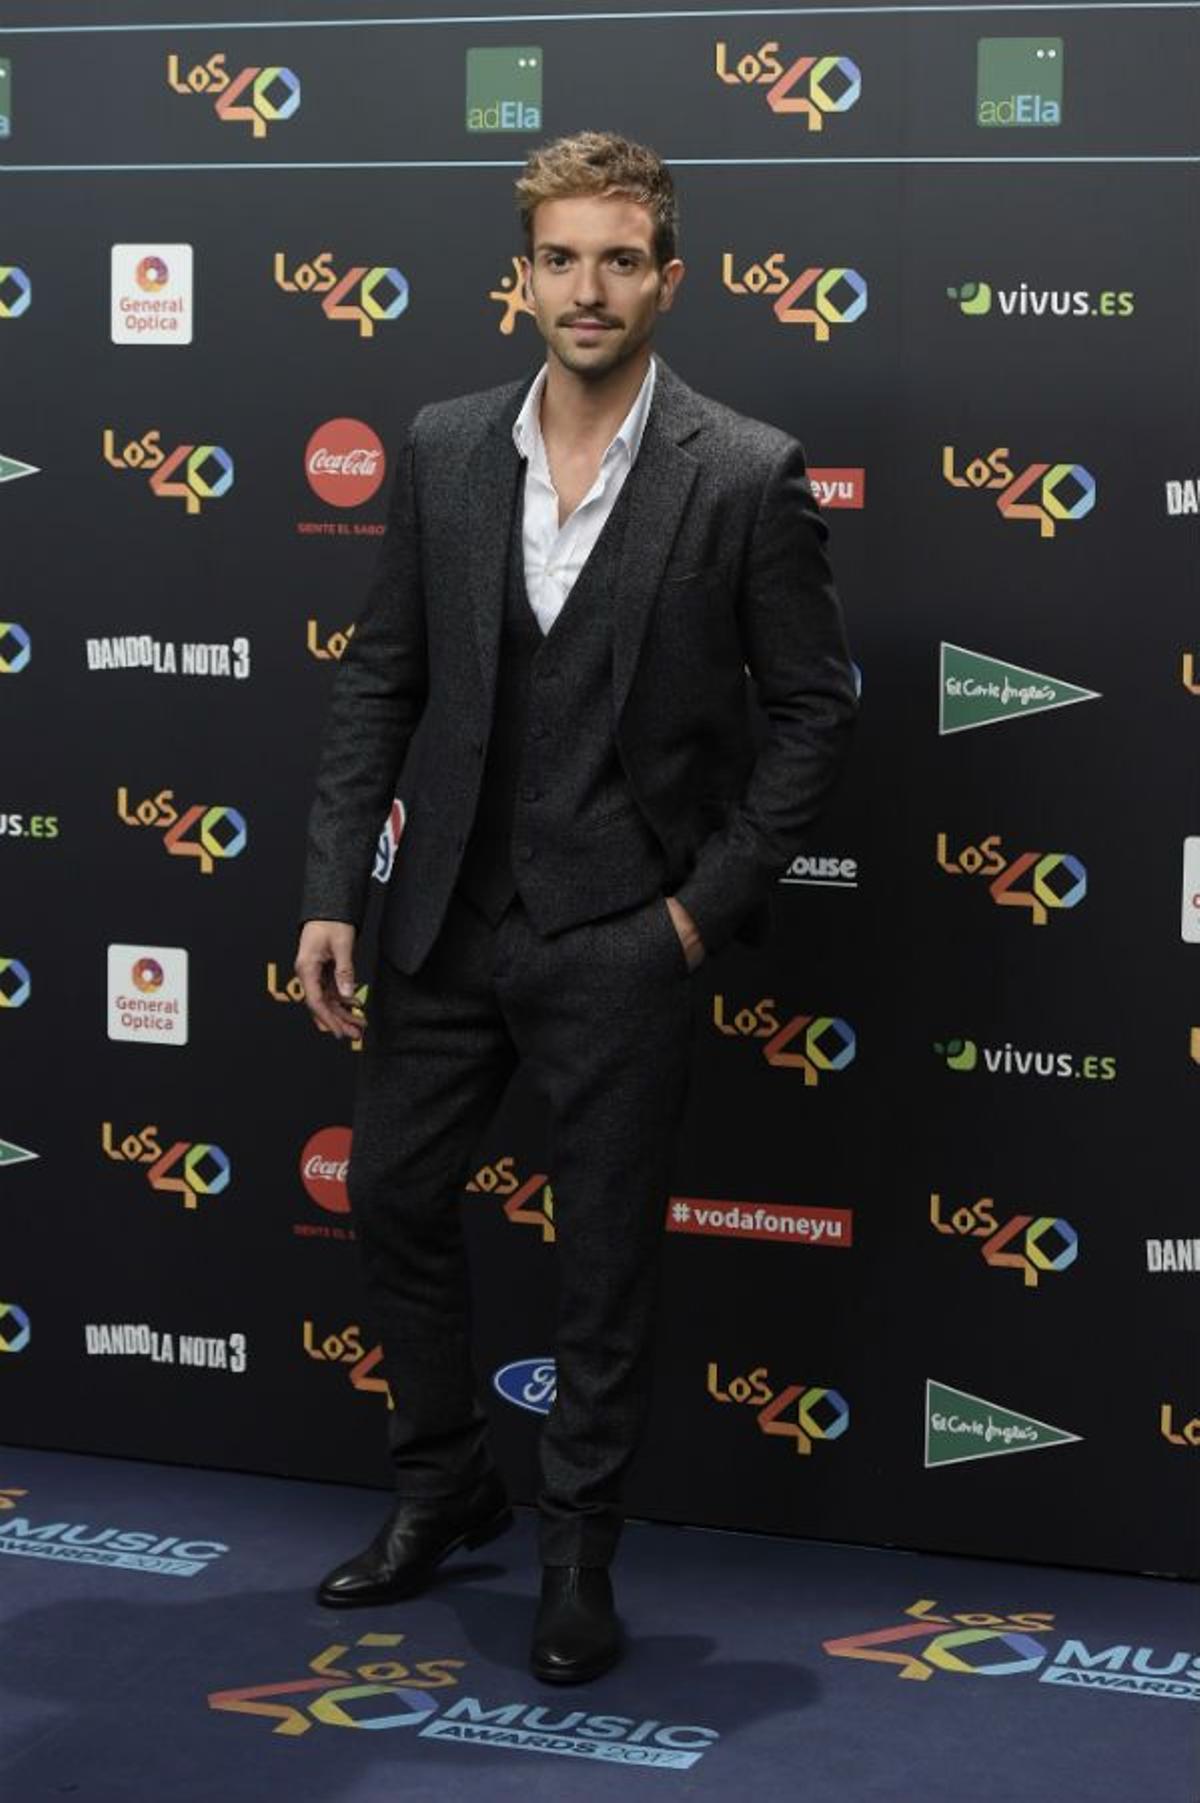 Pablo Alborán en Los 40 Music Awards 2017